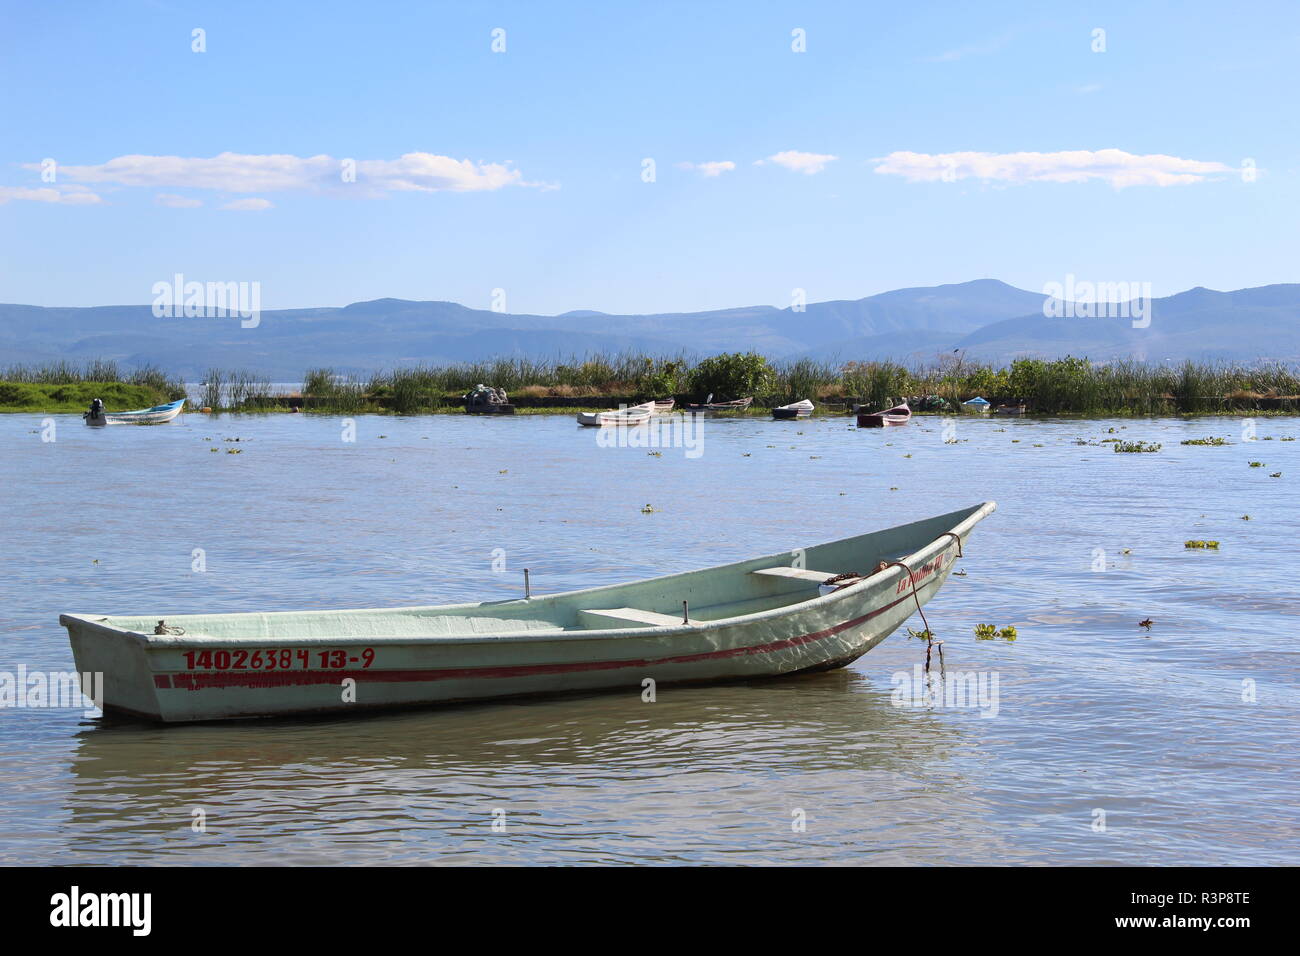 Foto tomada en Chapala,Jalisco,México en la que se aprecia un bote de pesca anclado en la orilla del lago al  fondo se ve la isla de los alacranes Stock Photo